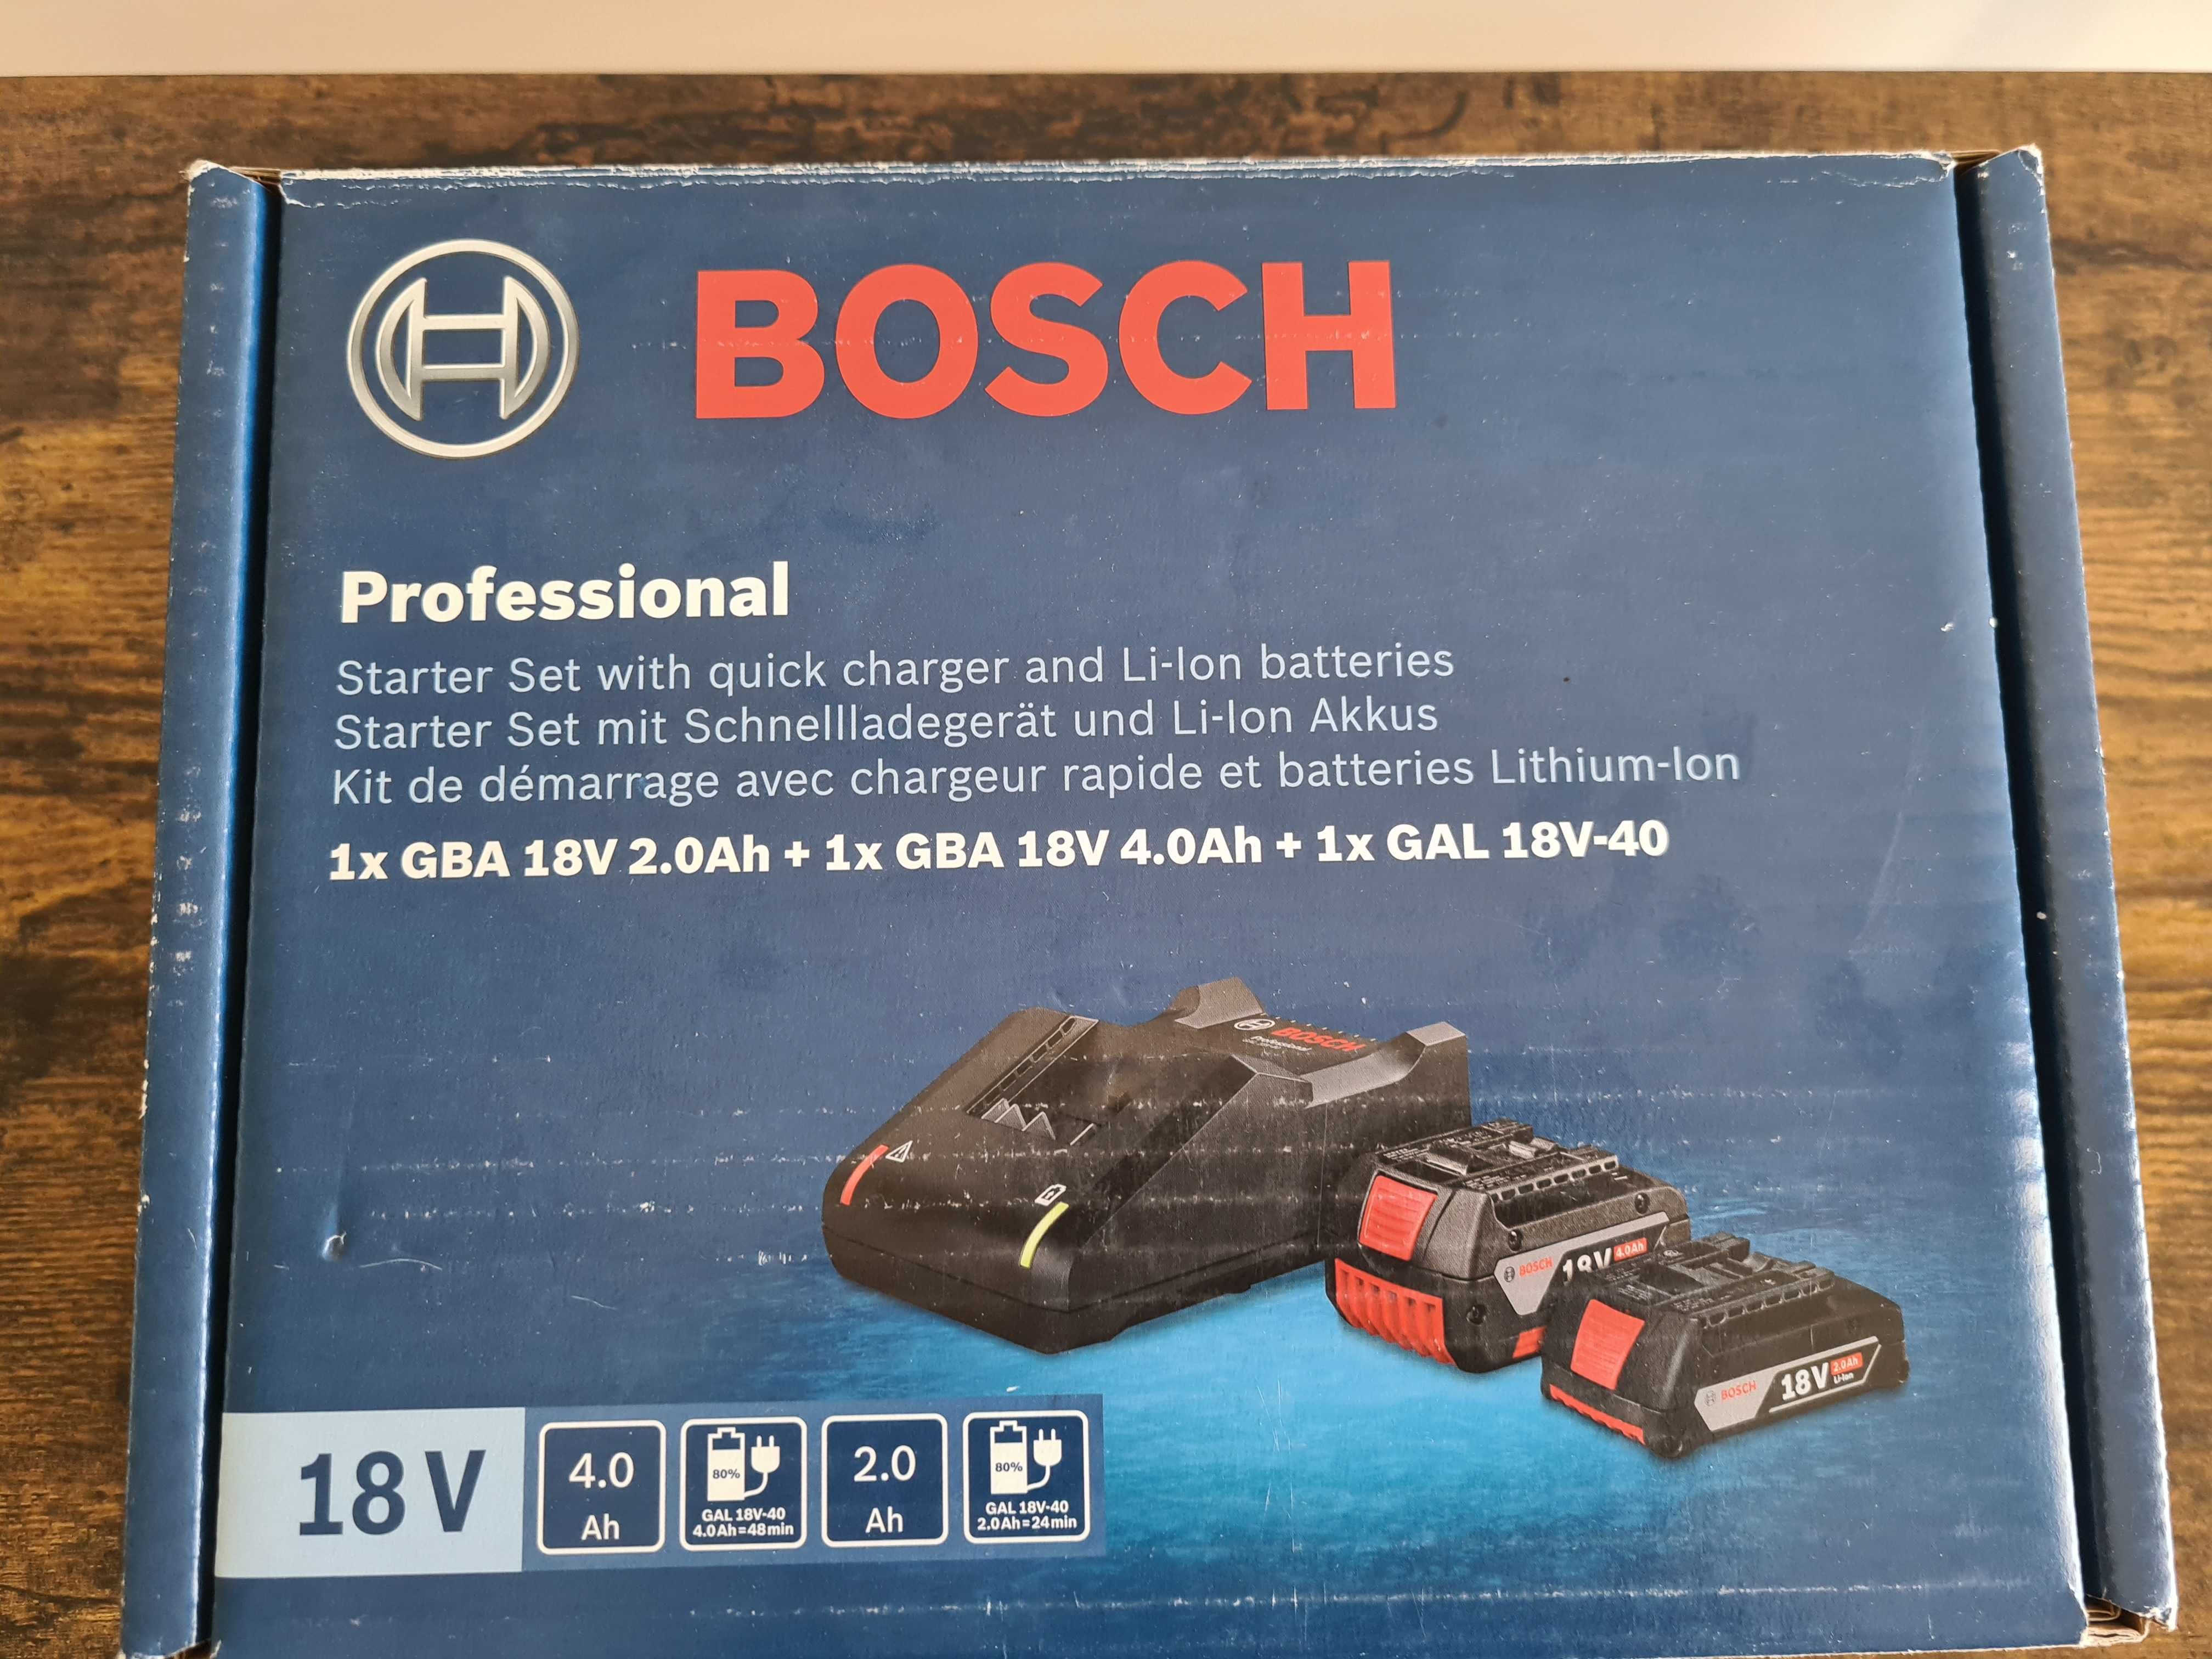 Bosch Professional 18V akumulatory i ładowarka zestaw startowy nówka